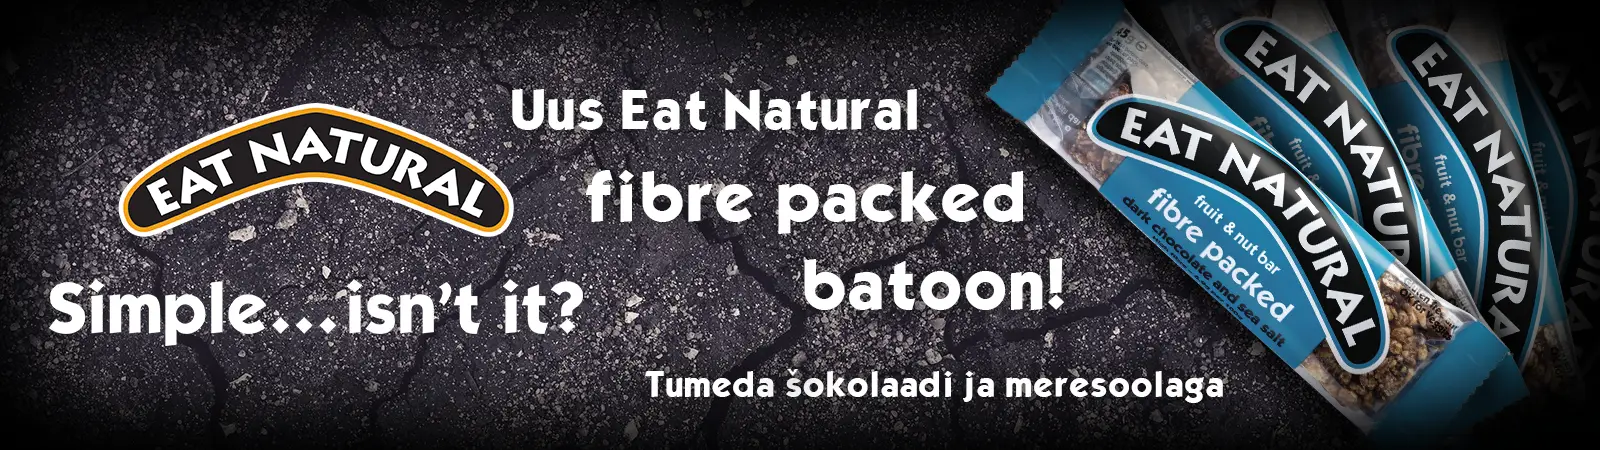 eat-natural-banner